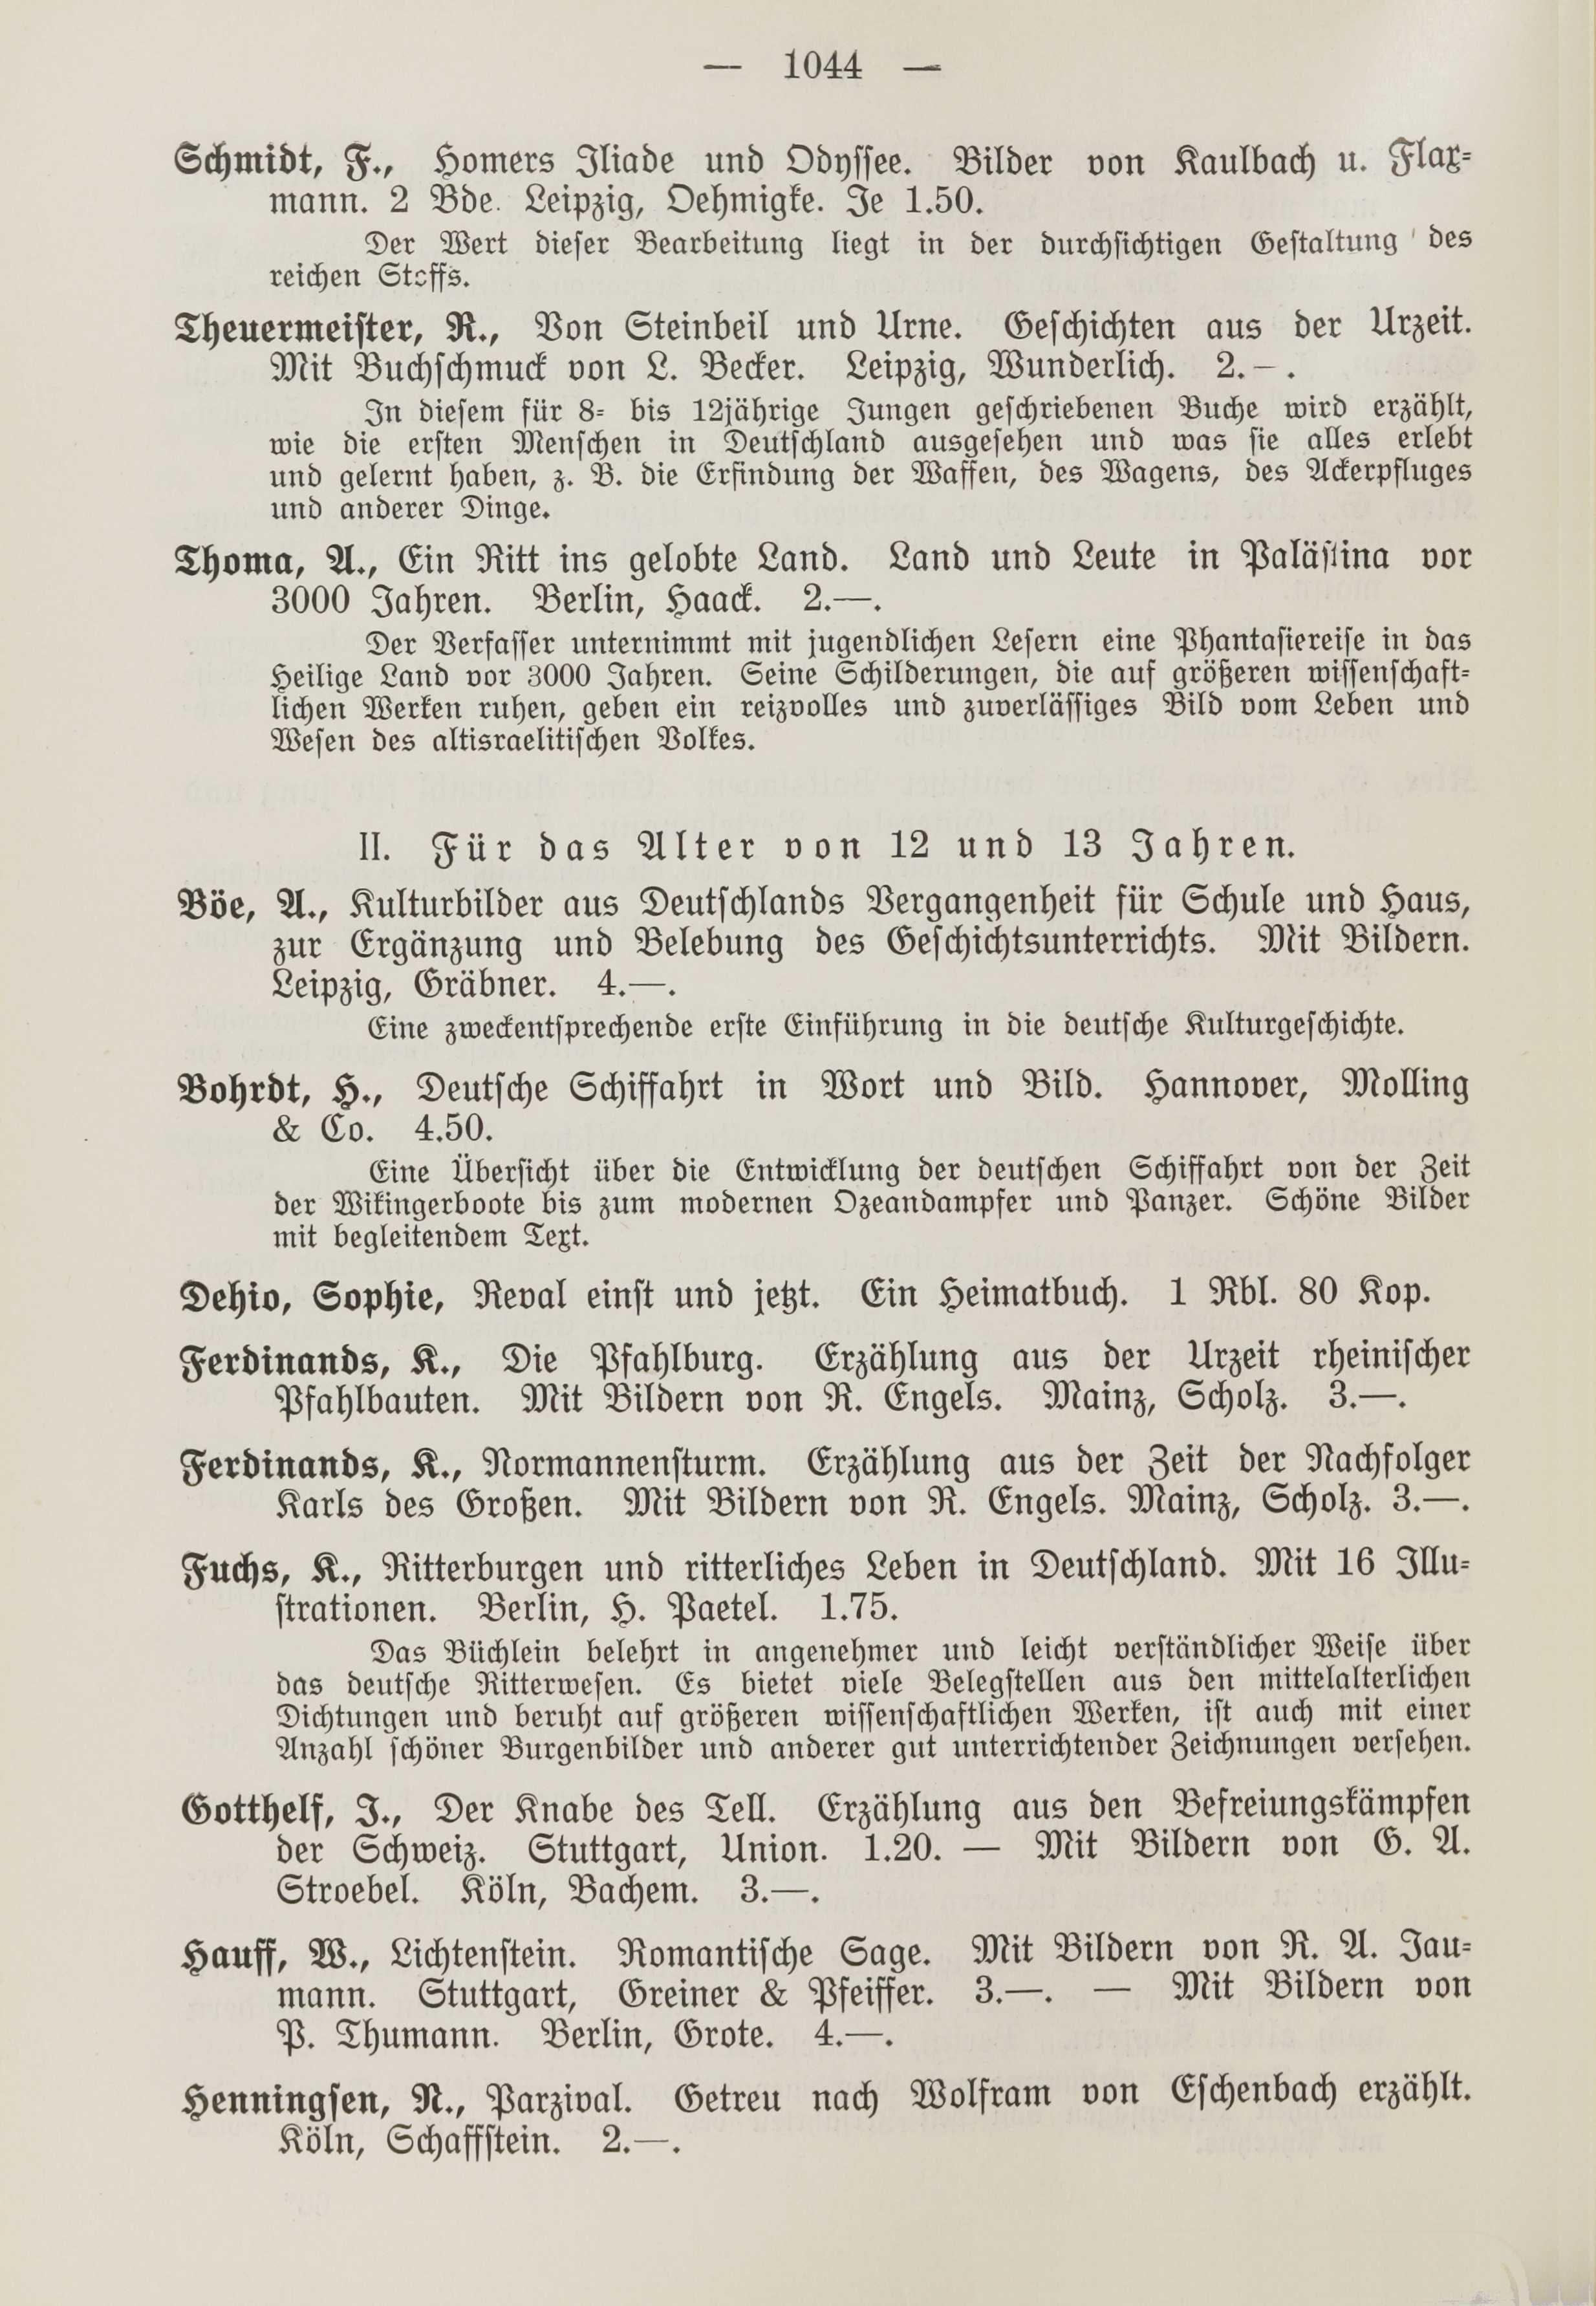 Deutsche Monatsschrift für Russland [1] (1912) | 1052. (1044) Main body of text